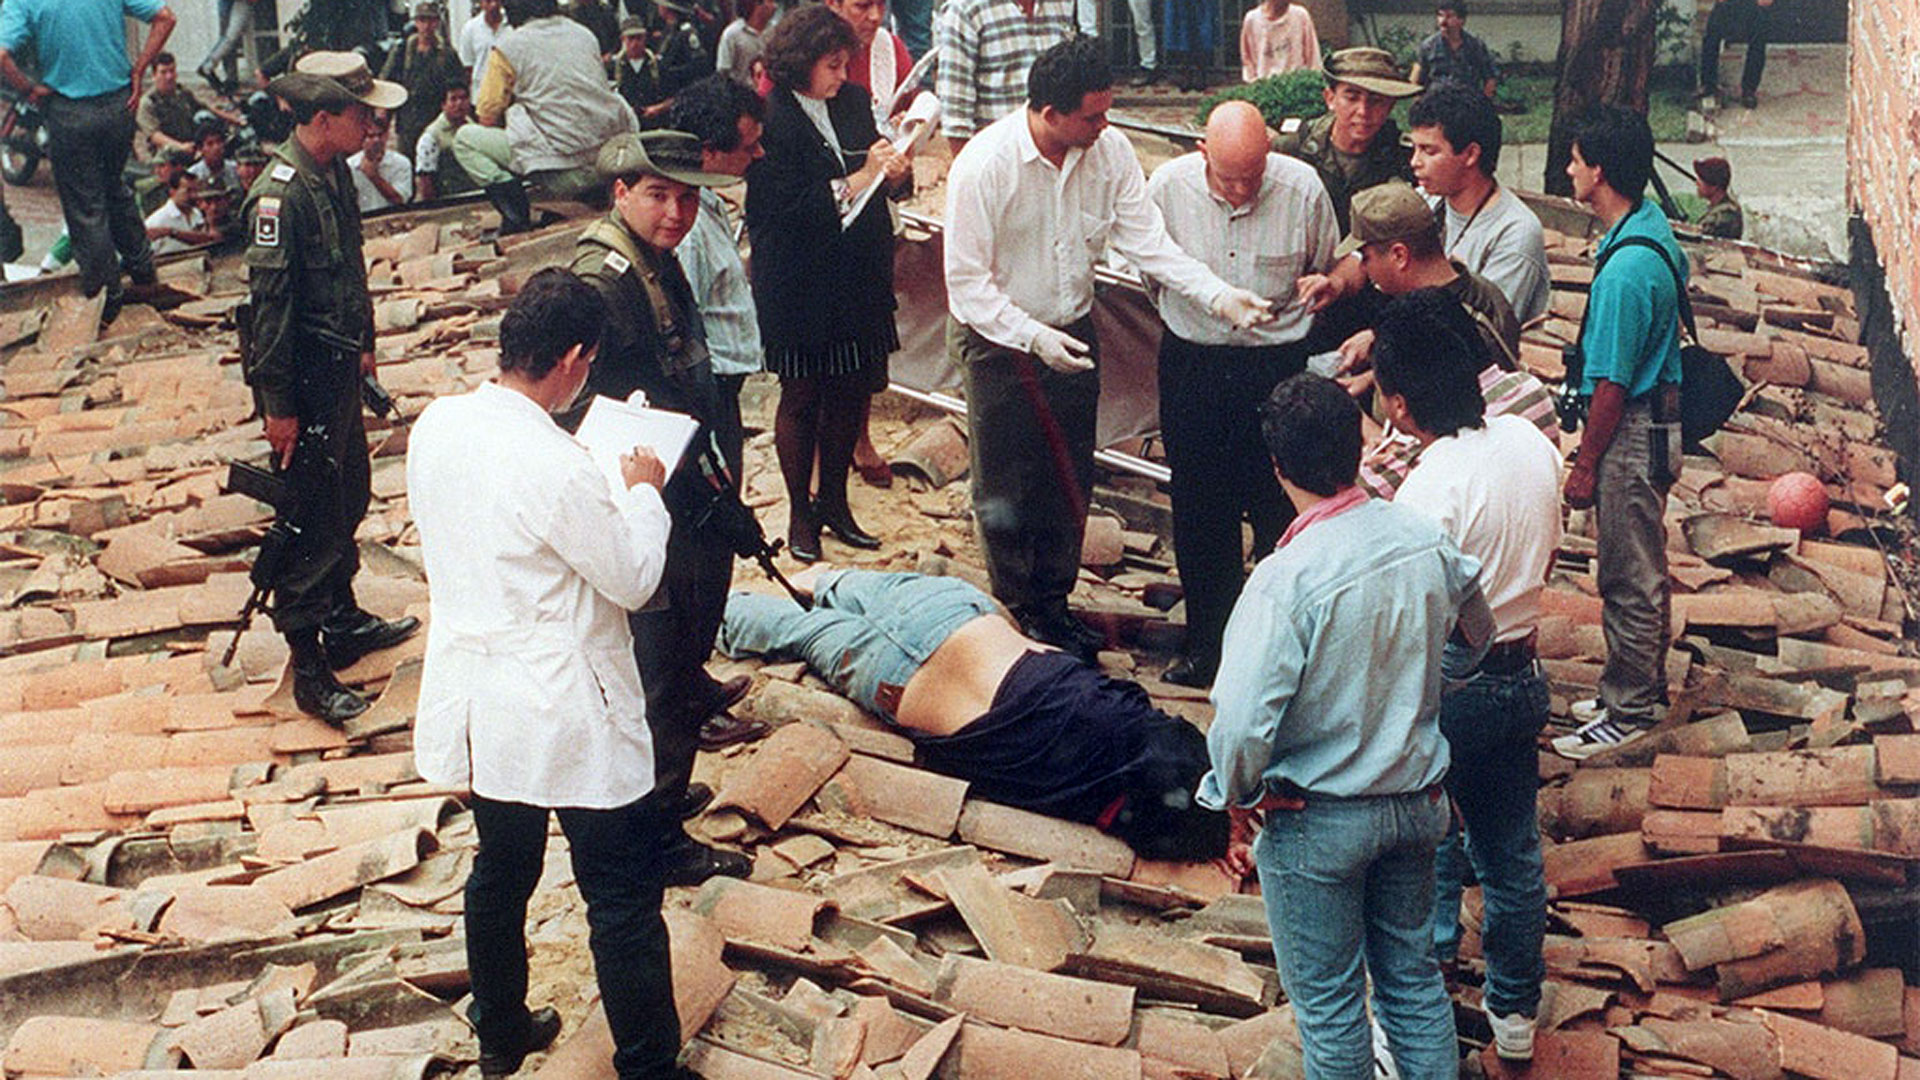 Pablo Escobar murió de un disparo en la cabeza el 2 de diciembre de 1993 en un tejado de Medellín mientras era perseguido por miembros del Bloque de Búsqueda. 